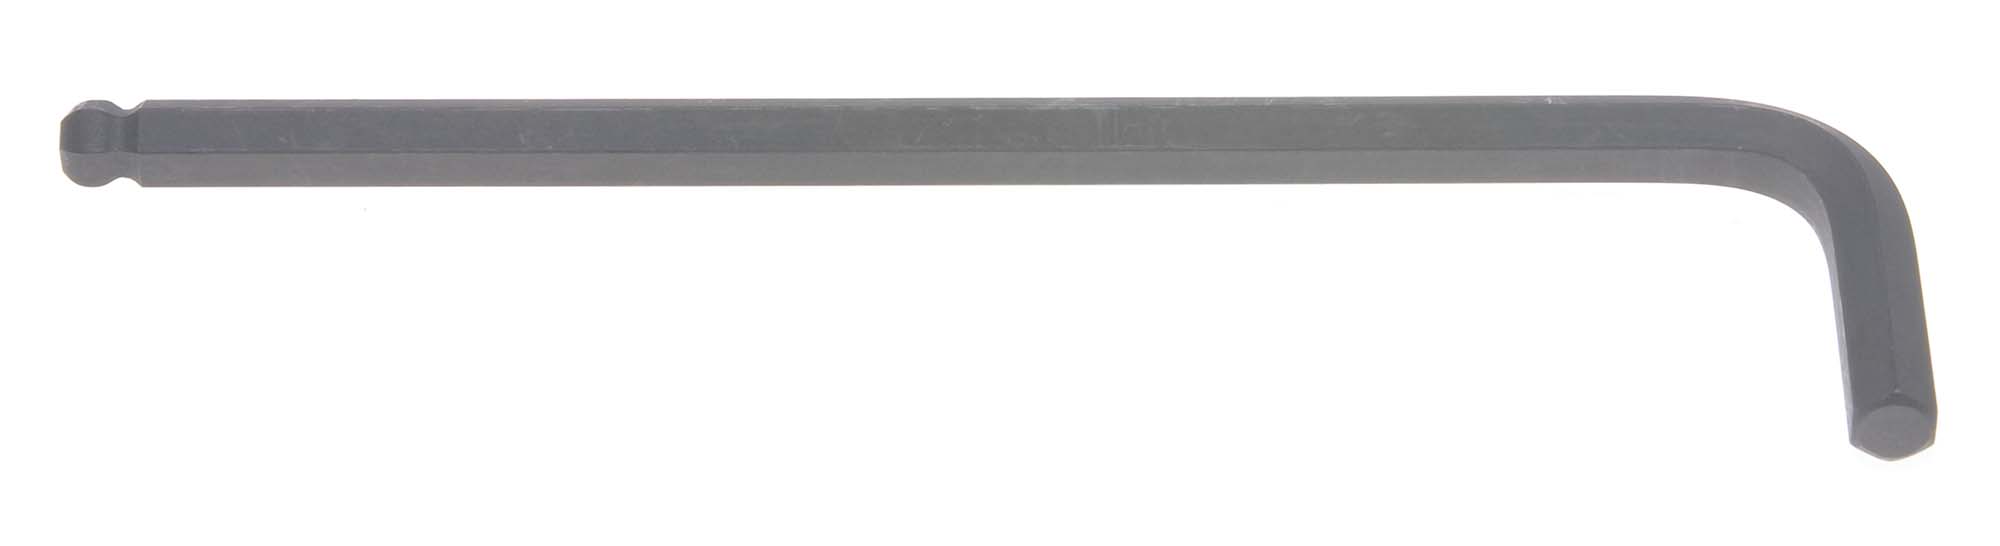 Bondhus 10978 11mm Balldriver L-Wrench Hex Key